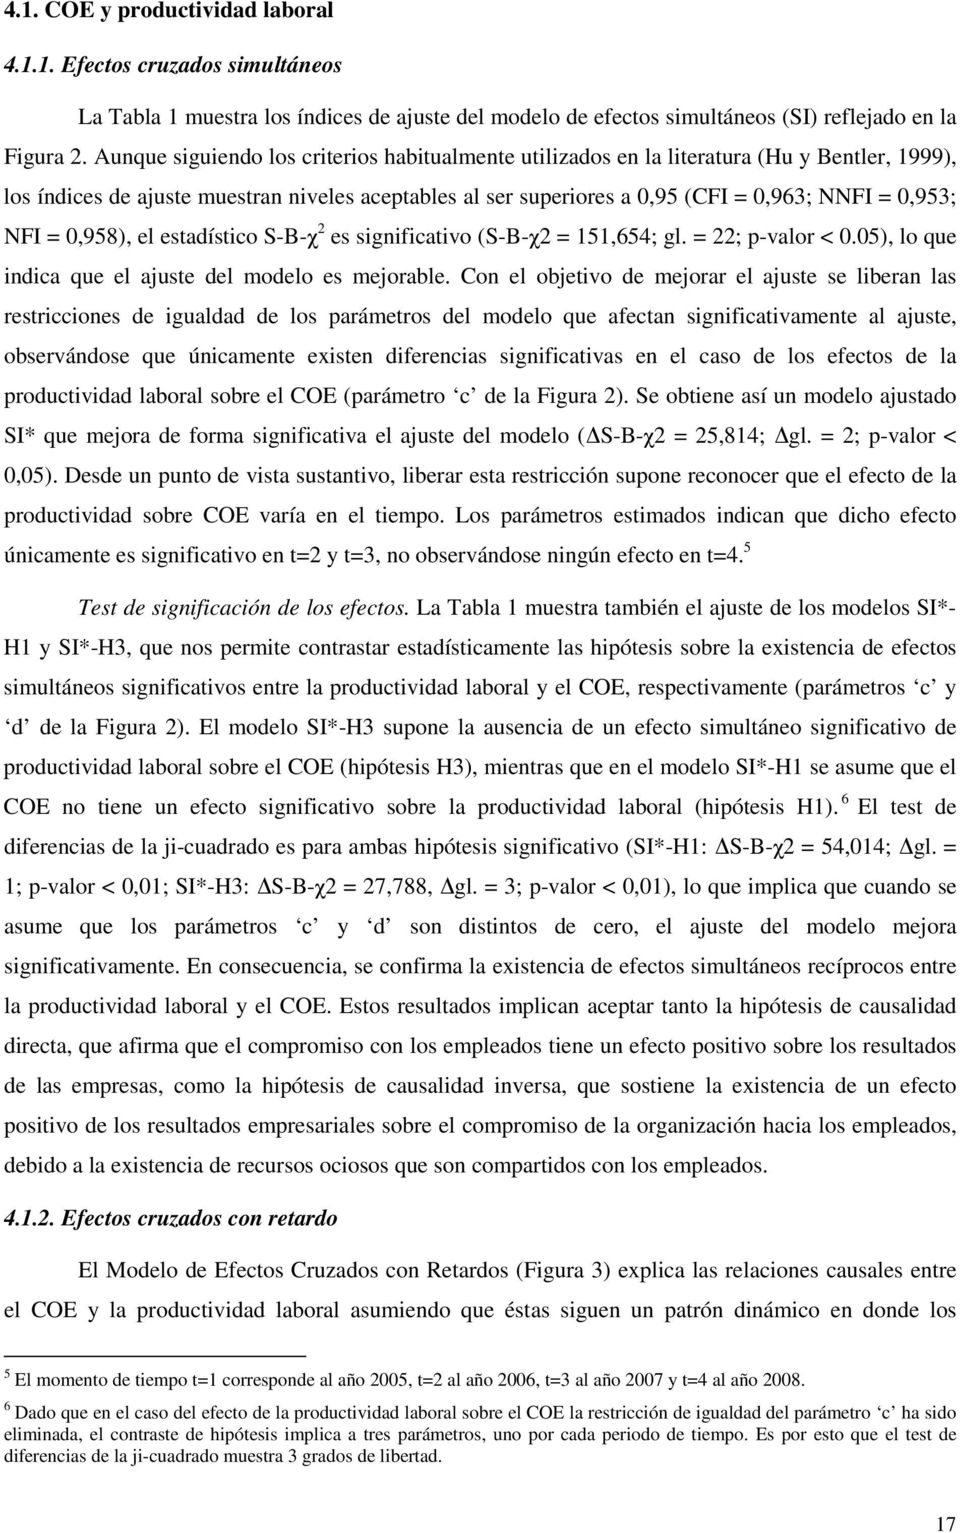 NFI = 0,958), el estadístico S-B-χ 2 es significativo (S-B-χ2 = 151,654; gl. = 22; p-valor < 0.05), lo que indica que el ajuste del modelo es mejorable.